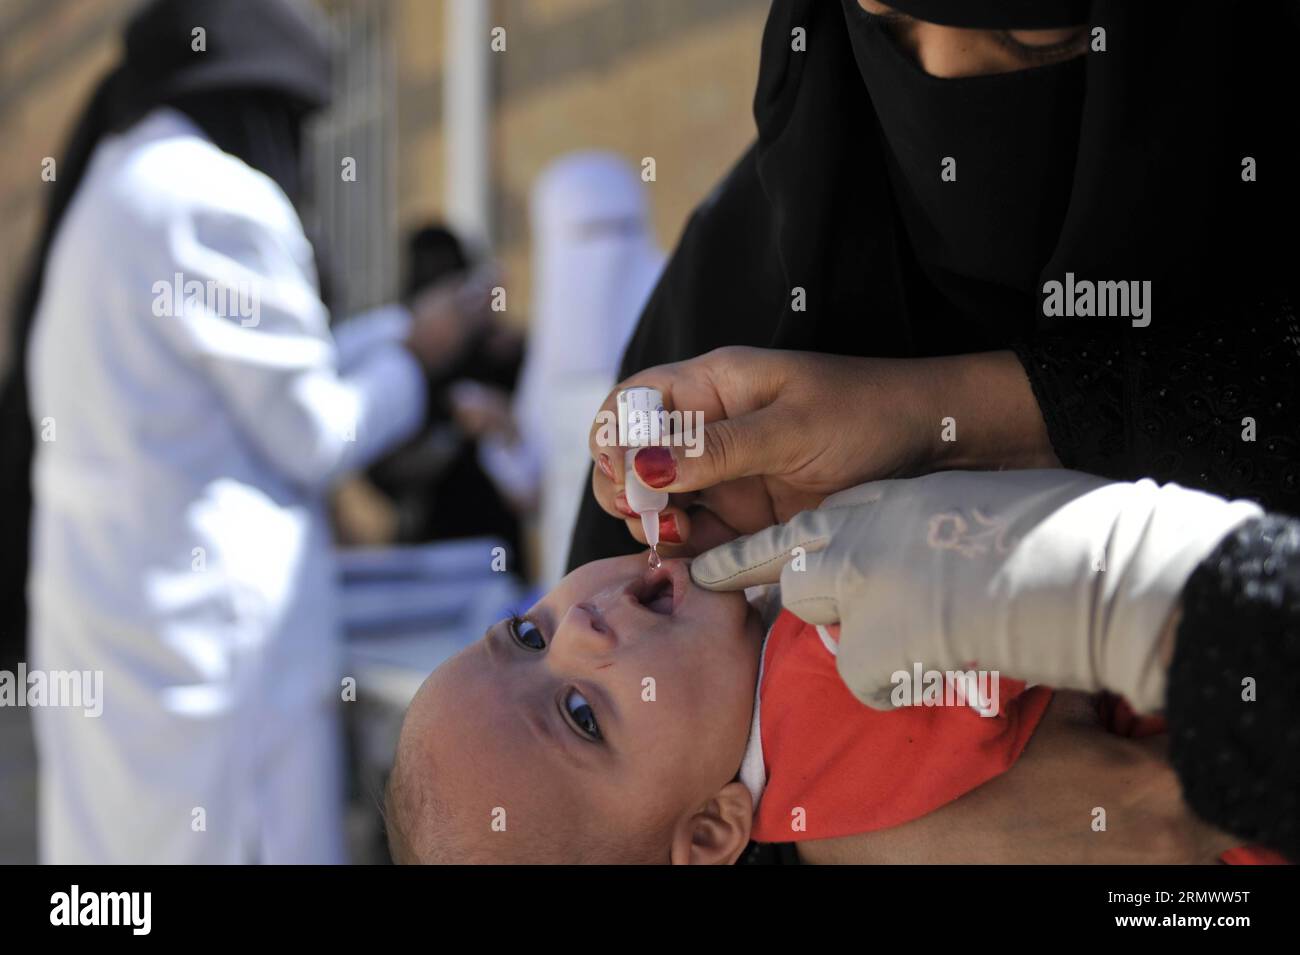 (141111) -- SANAA, 11. November 2014 -- Ein jemenitisches Kind erhält einen Polioimpfstoff während einer landesweiten Polioimpfungskampagne, die am 11. November 2014 in Sanaa, Jemen, 11,6 Millionen Kinder im Alter zwischen einem und fünfzehn Jahren ins Visier nimmt. ) JEMEN-SANAA-POLIOIMPFUNG HanixAli PUBLICATIONxNOTxINxCHN Sanaa 11. November 2014 ein jemenitisches Kind erhält einen Polioimpfstoff während einer landesweiten Polioimpfungskampagne gegen 11 6 Millionen Kinder im Alter von 1 bis 15 Jahren in Sanaa Jemen AM 11. November 2014 Jemen Sanaa Polioimpfung PUBLICTINxN Stockfoto